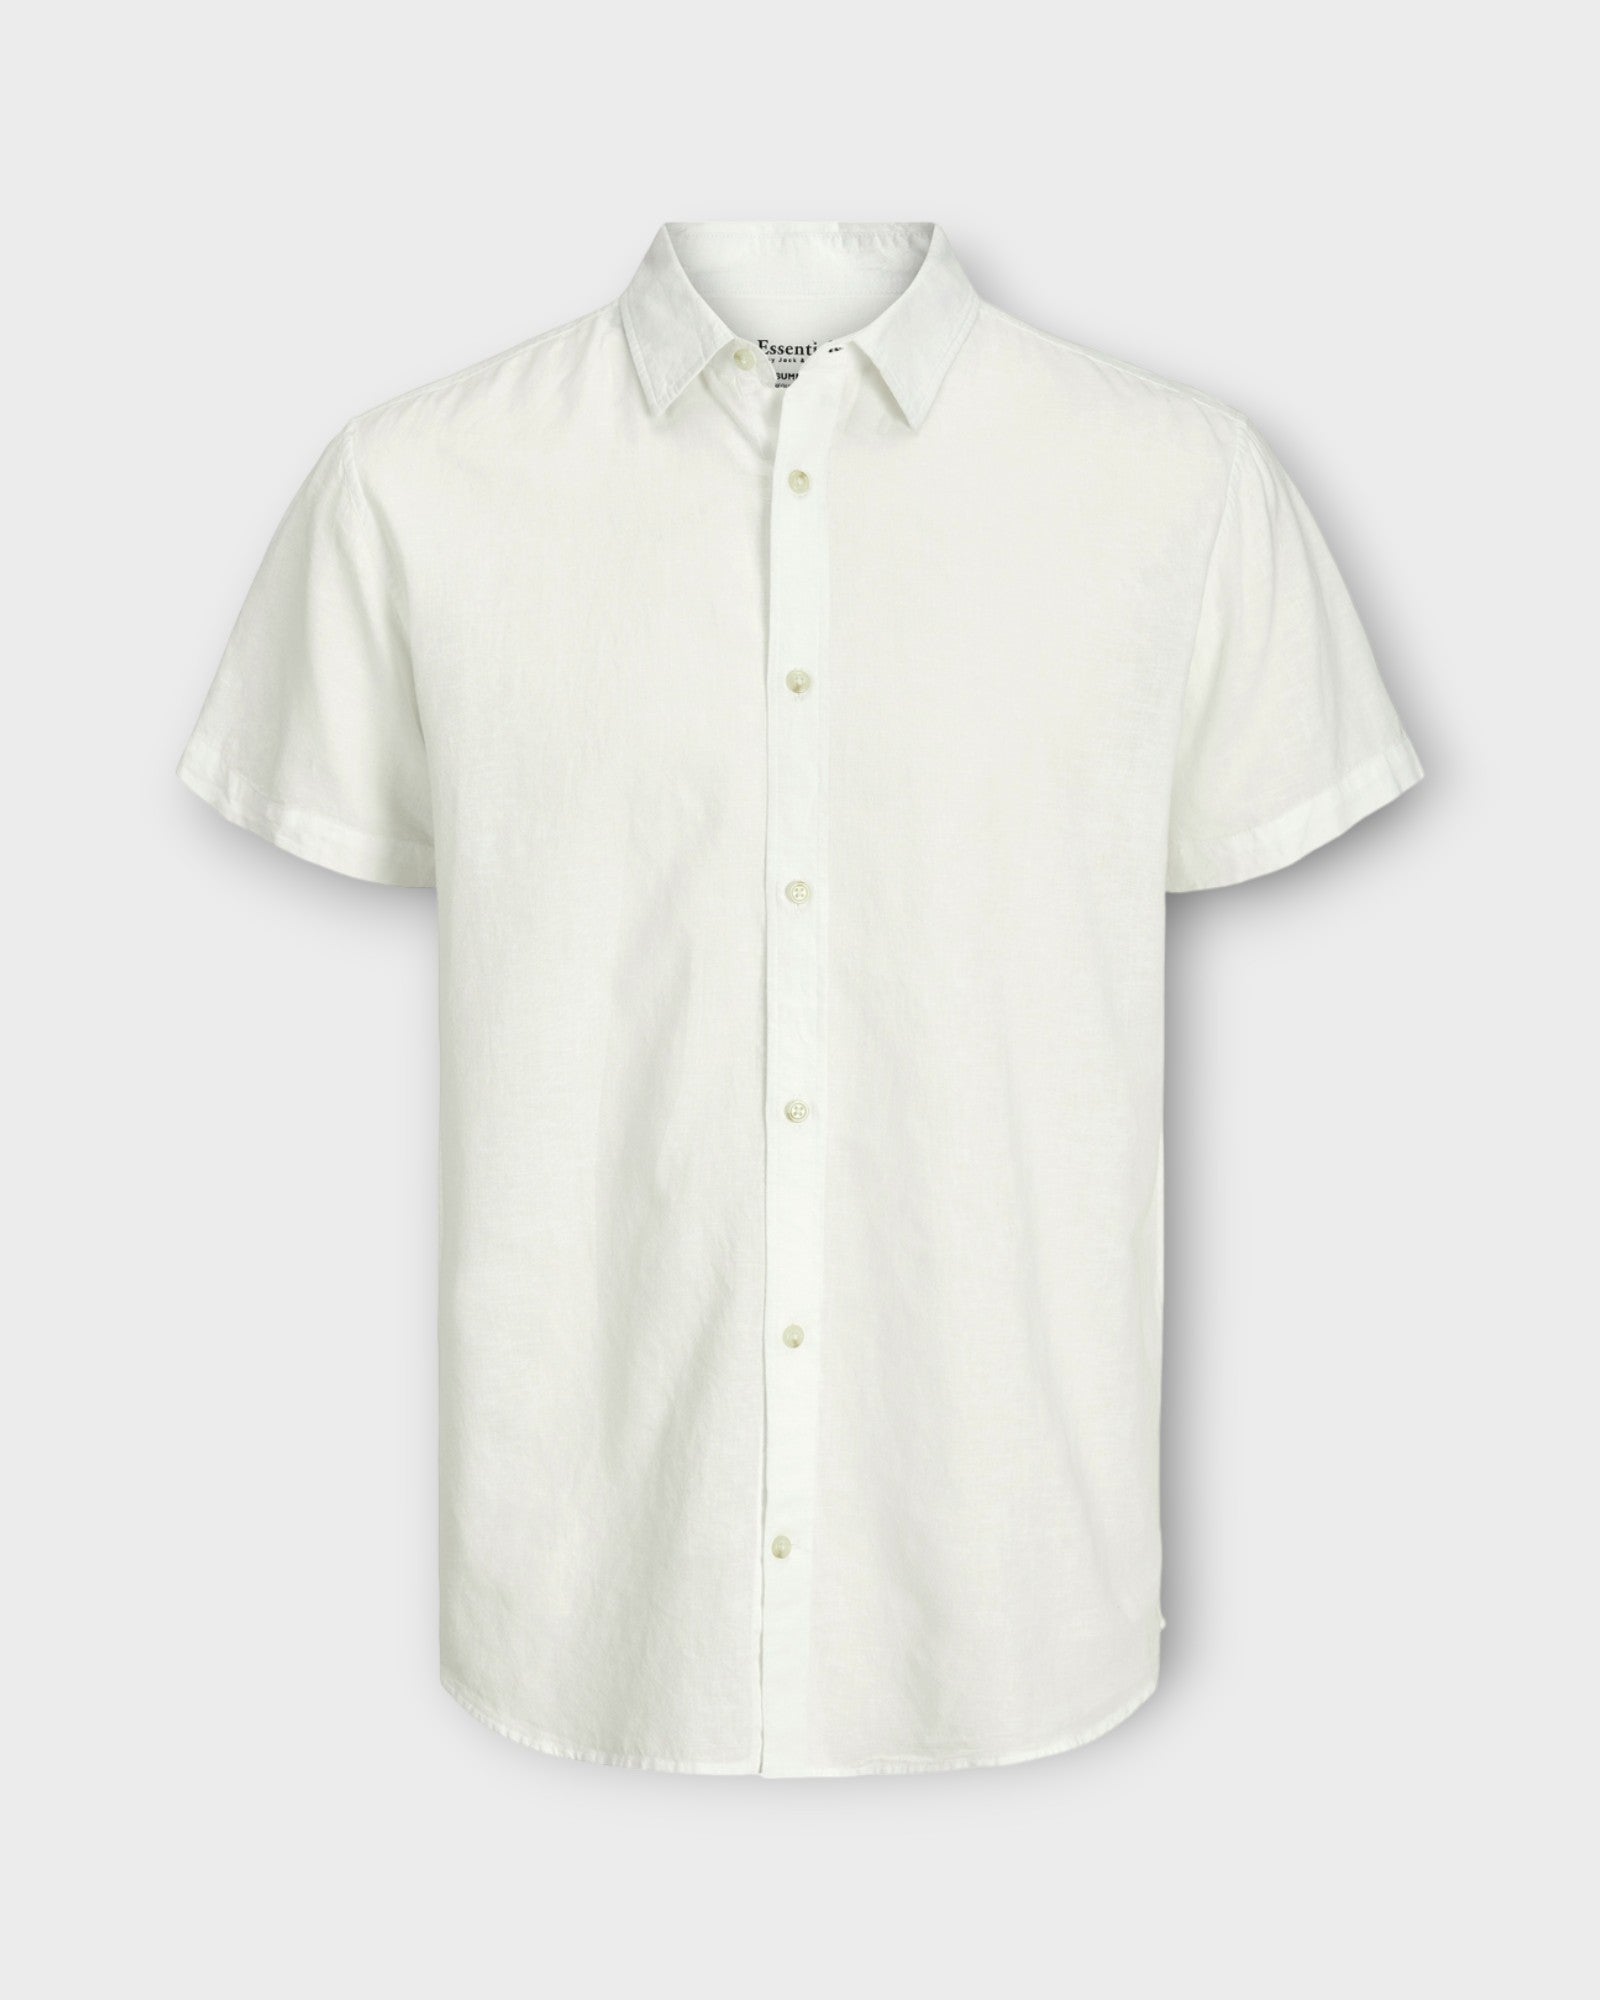 Jack and Jones summer linen blend shirt white. Kortærmet hvid hørskjorte til mænd. Her set forfra.